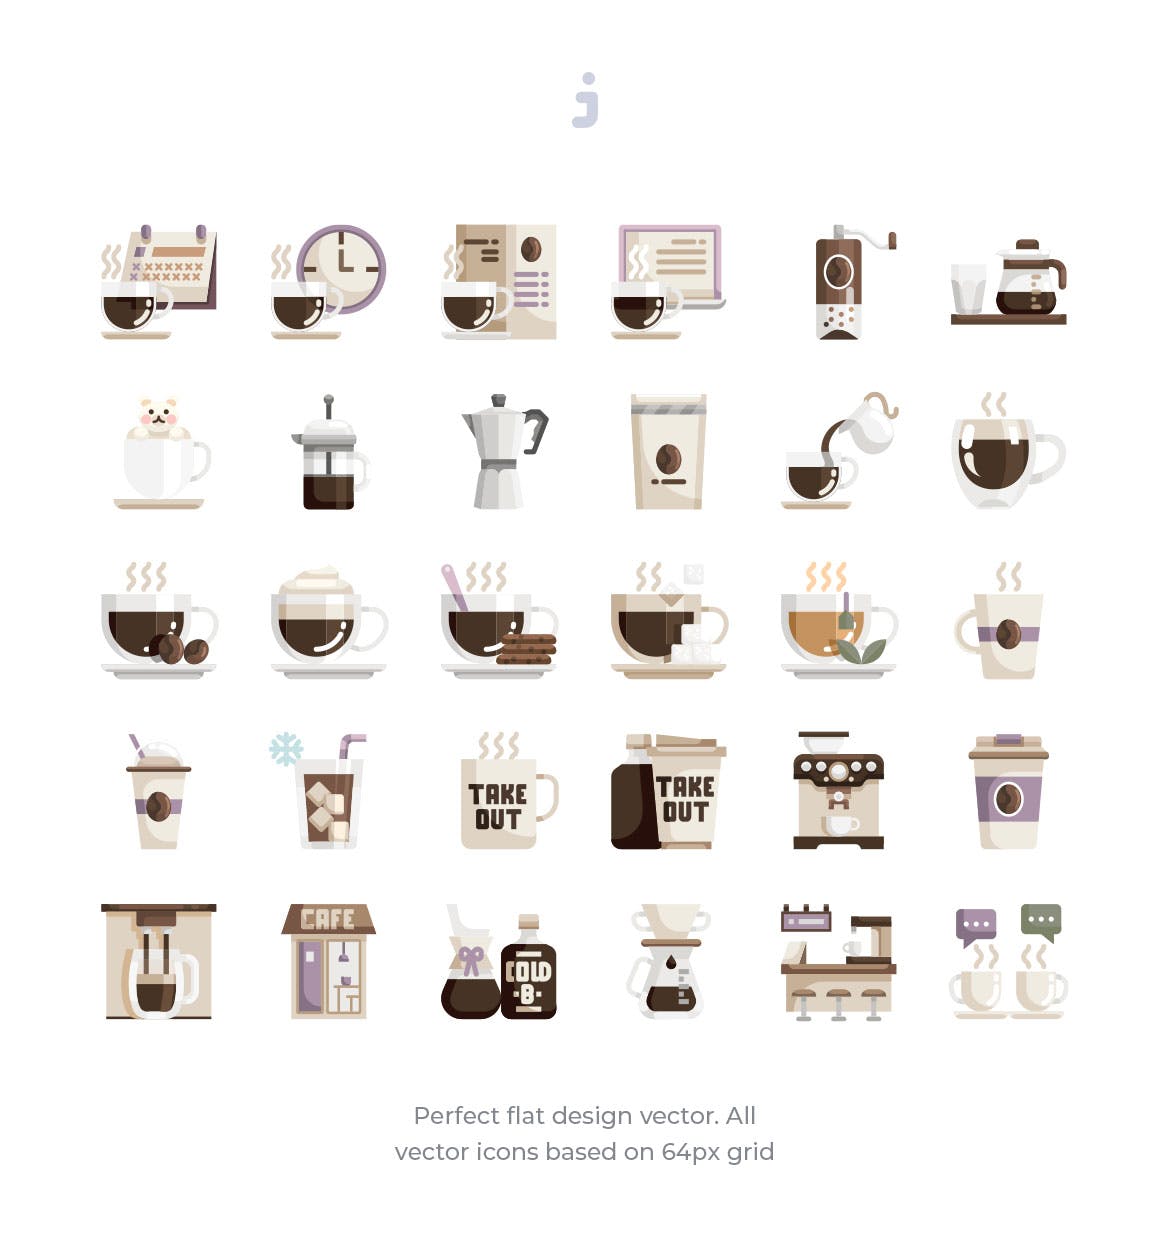 30枚咖啡/咖啡店扁平设计风格矢量16设计素材网精选图标素材 30 Coffee Shop Icons – Flat插图(1)